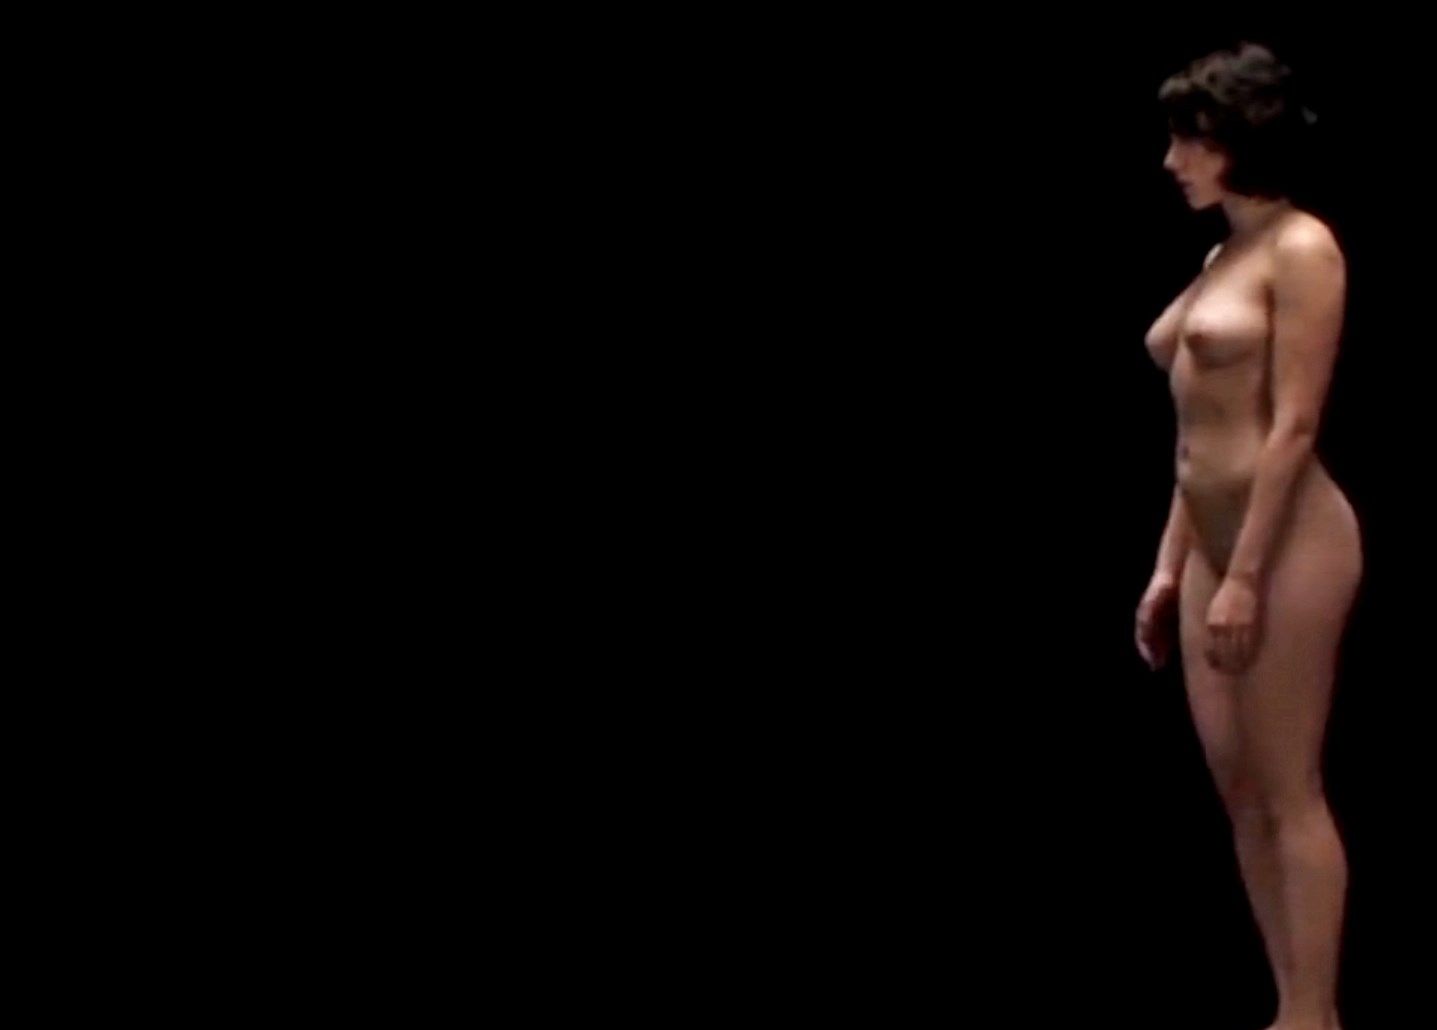 Scarlett Johansson Nude (8 Pics + Color-Corrected Video) .